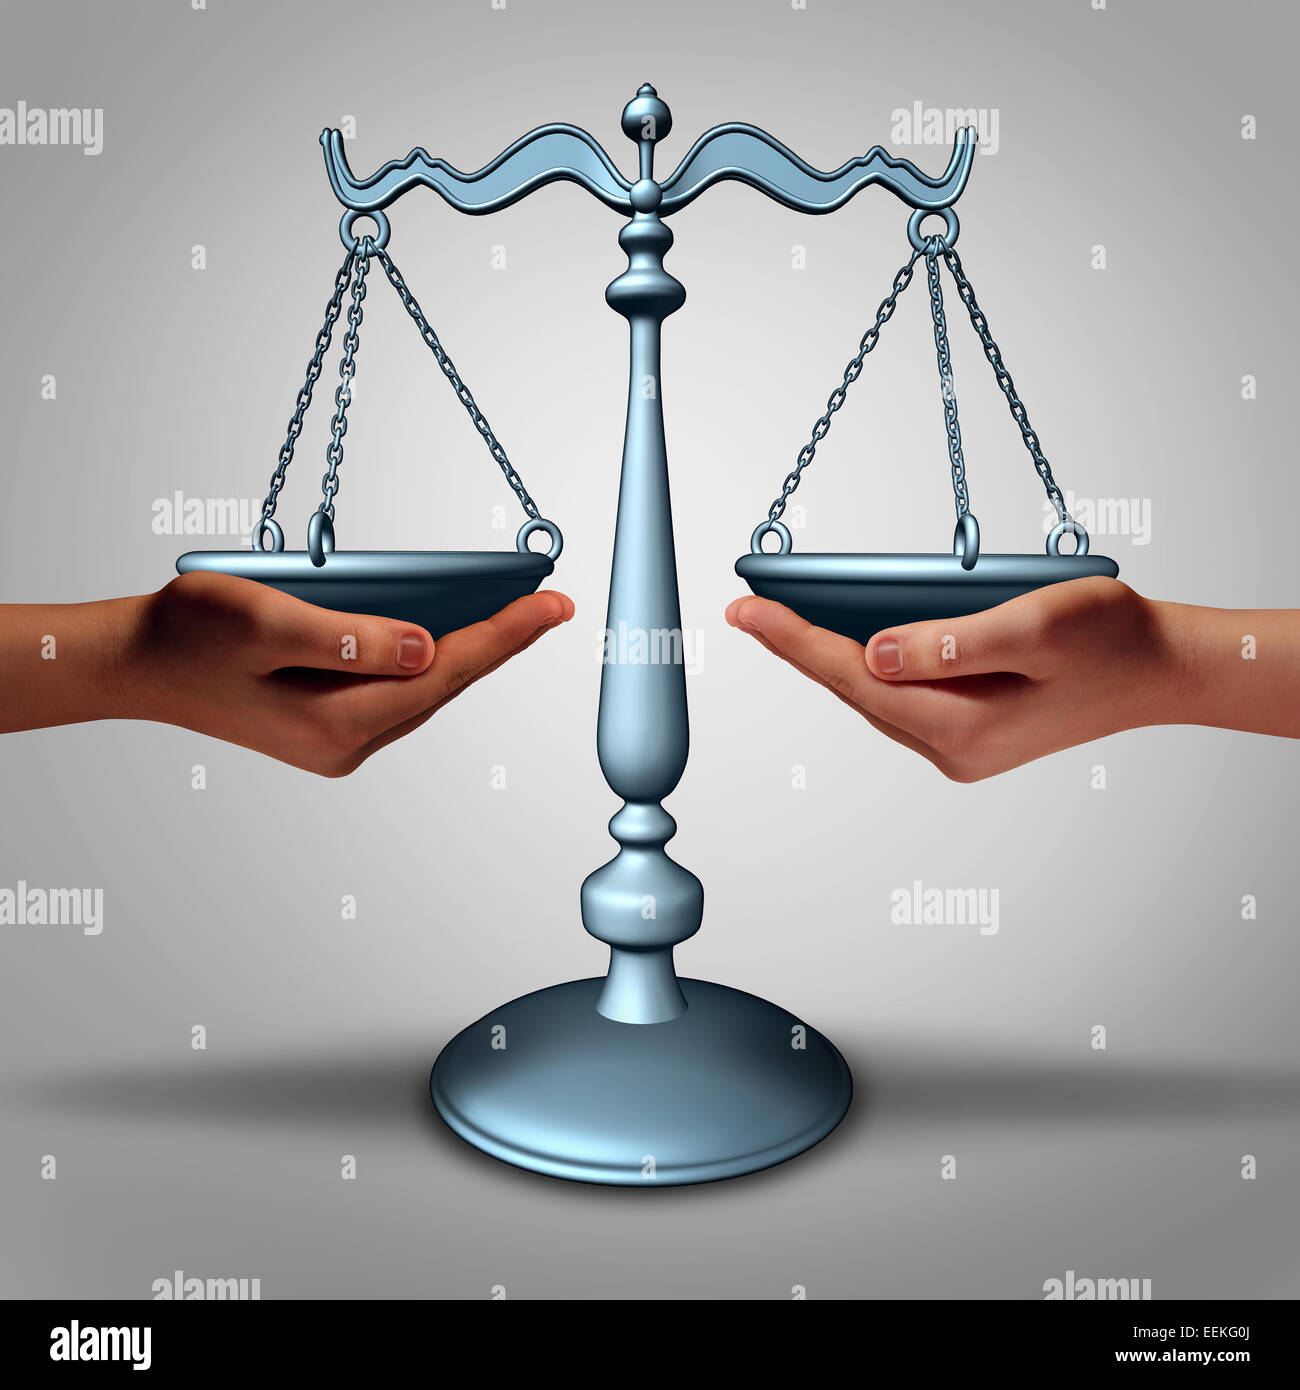 Rechtliche Unterstützung und Anwalt Beratung Konzept als zwei Hände halten eine Justiz-Skala als Metapher und Gesetz Symbol für Gericht und Rat. Stockfoto